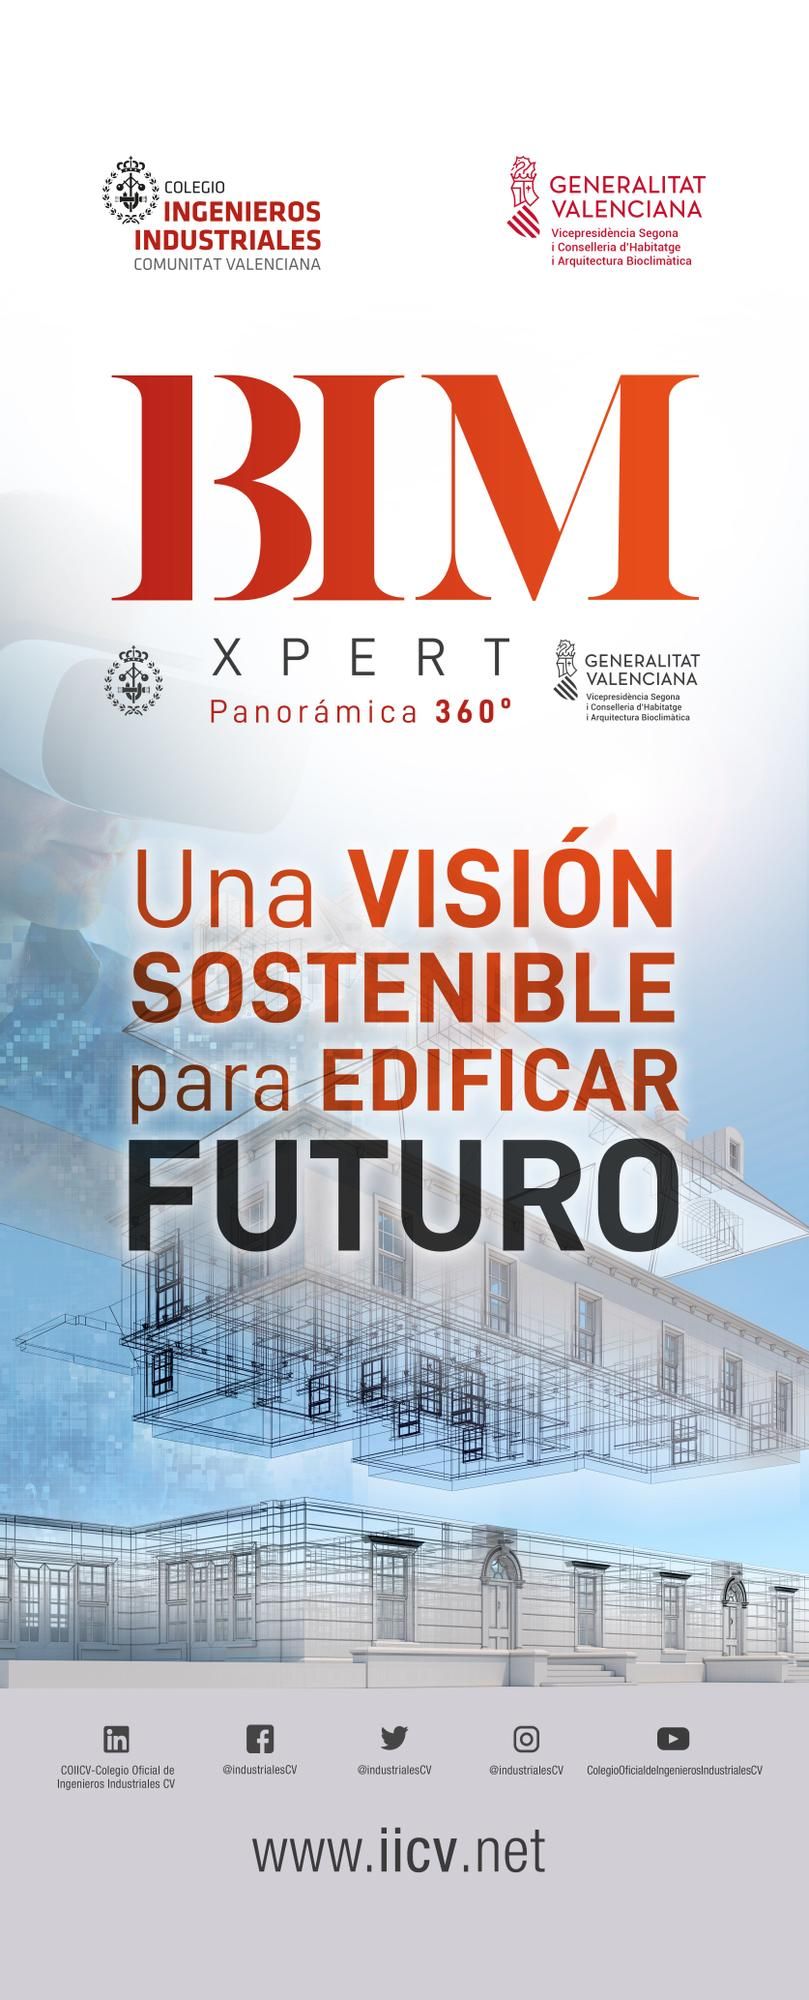 Desde el Colegio de Ingenieros Industriales de la Comunitat Valenciana muestran su compromiso por impulsar la digitalización para la sostenibilidad en la construcción, mantenimiento y uso de infraestructuras. ED